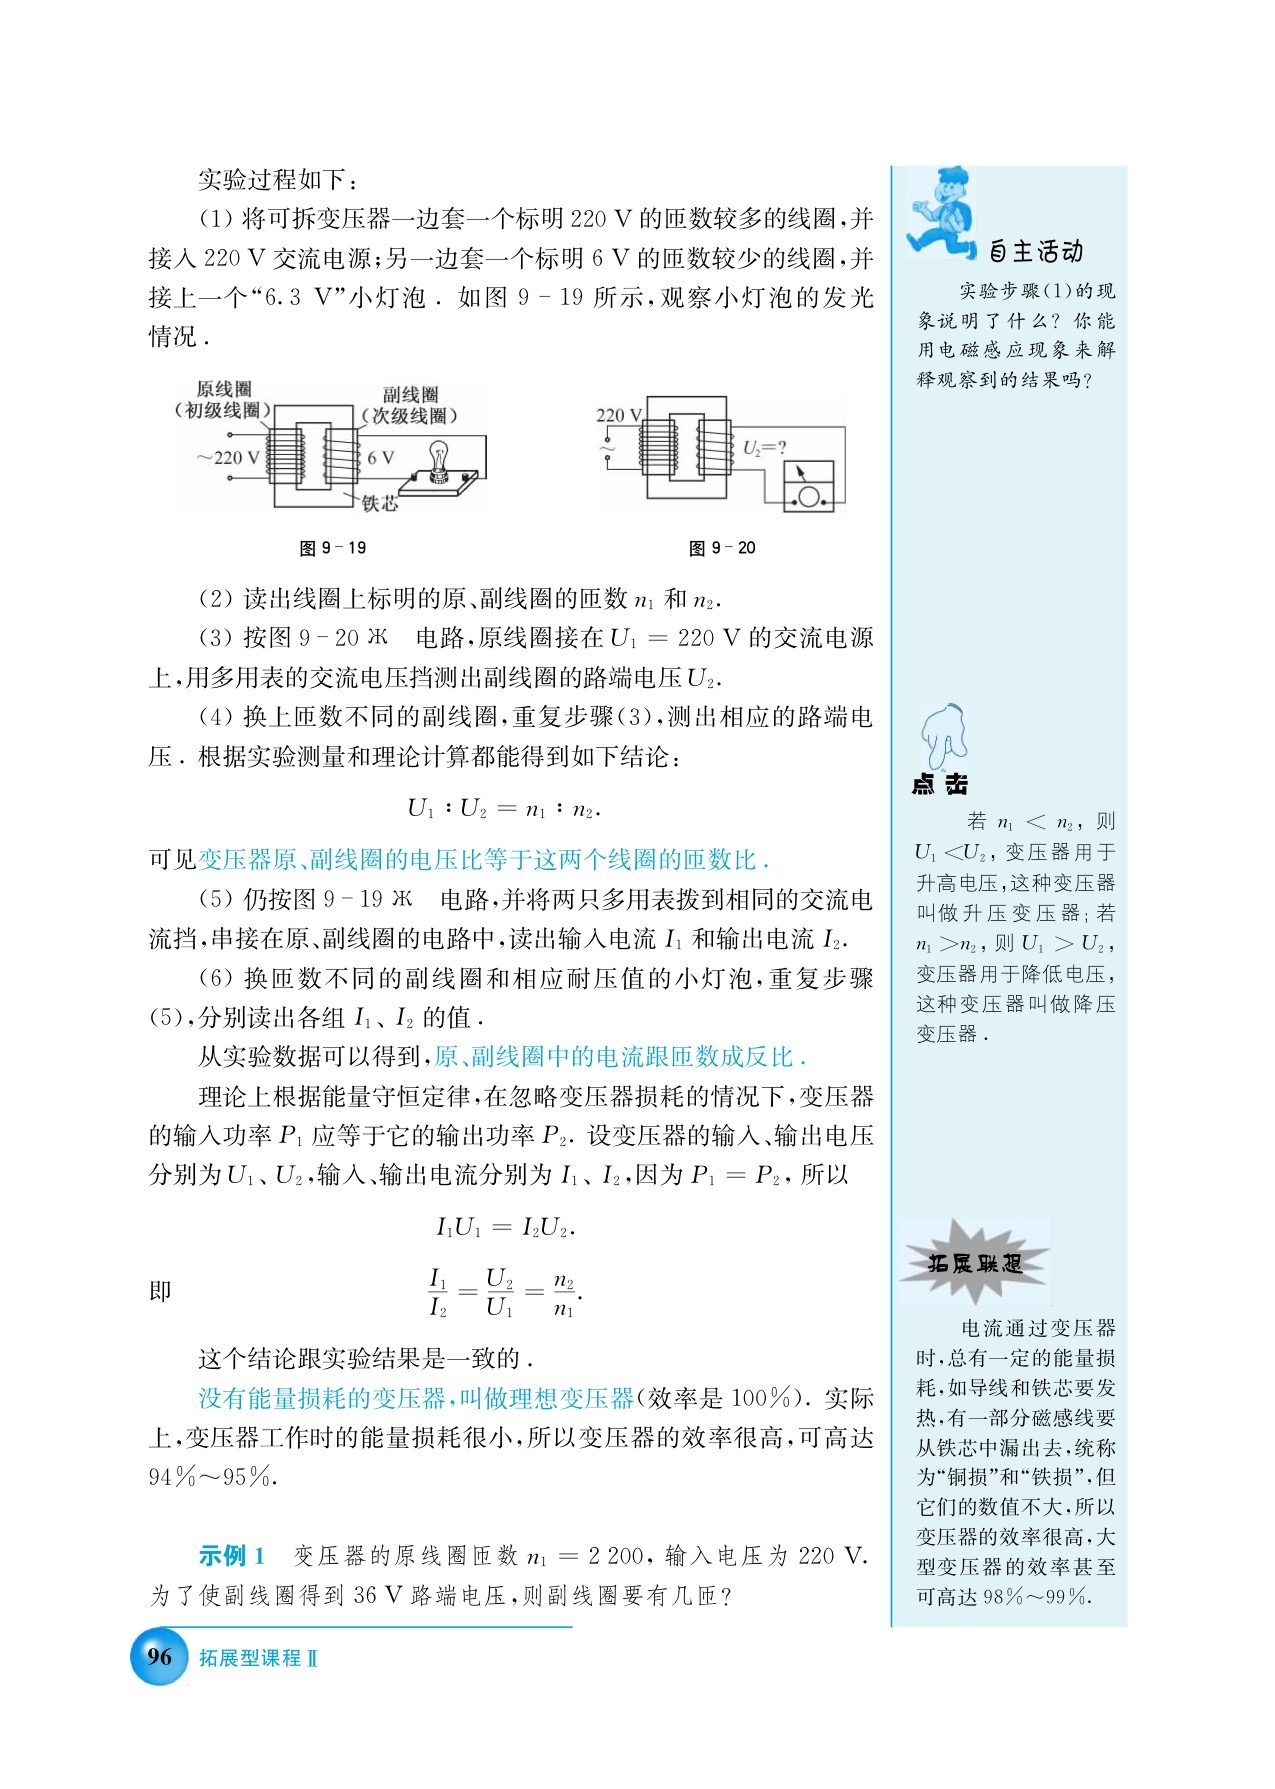 B. 变压器高压输电(2)